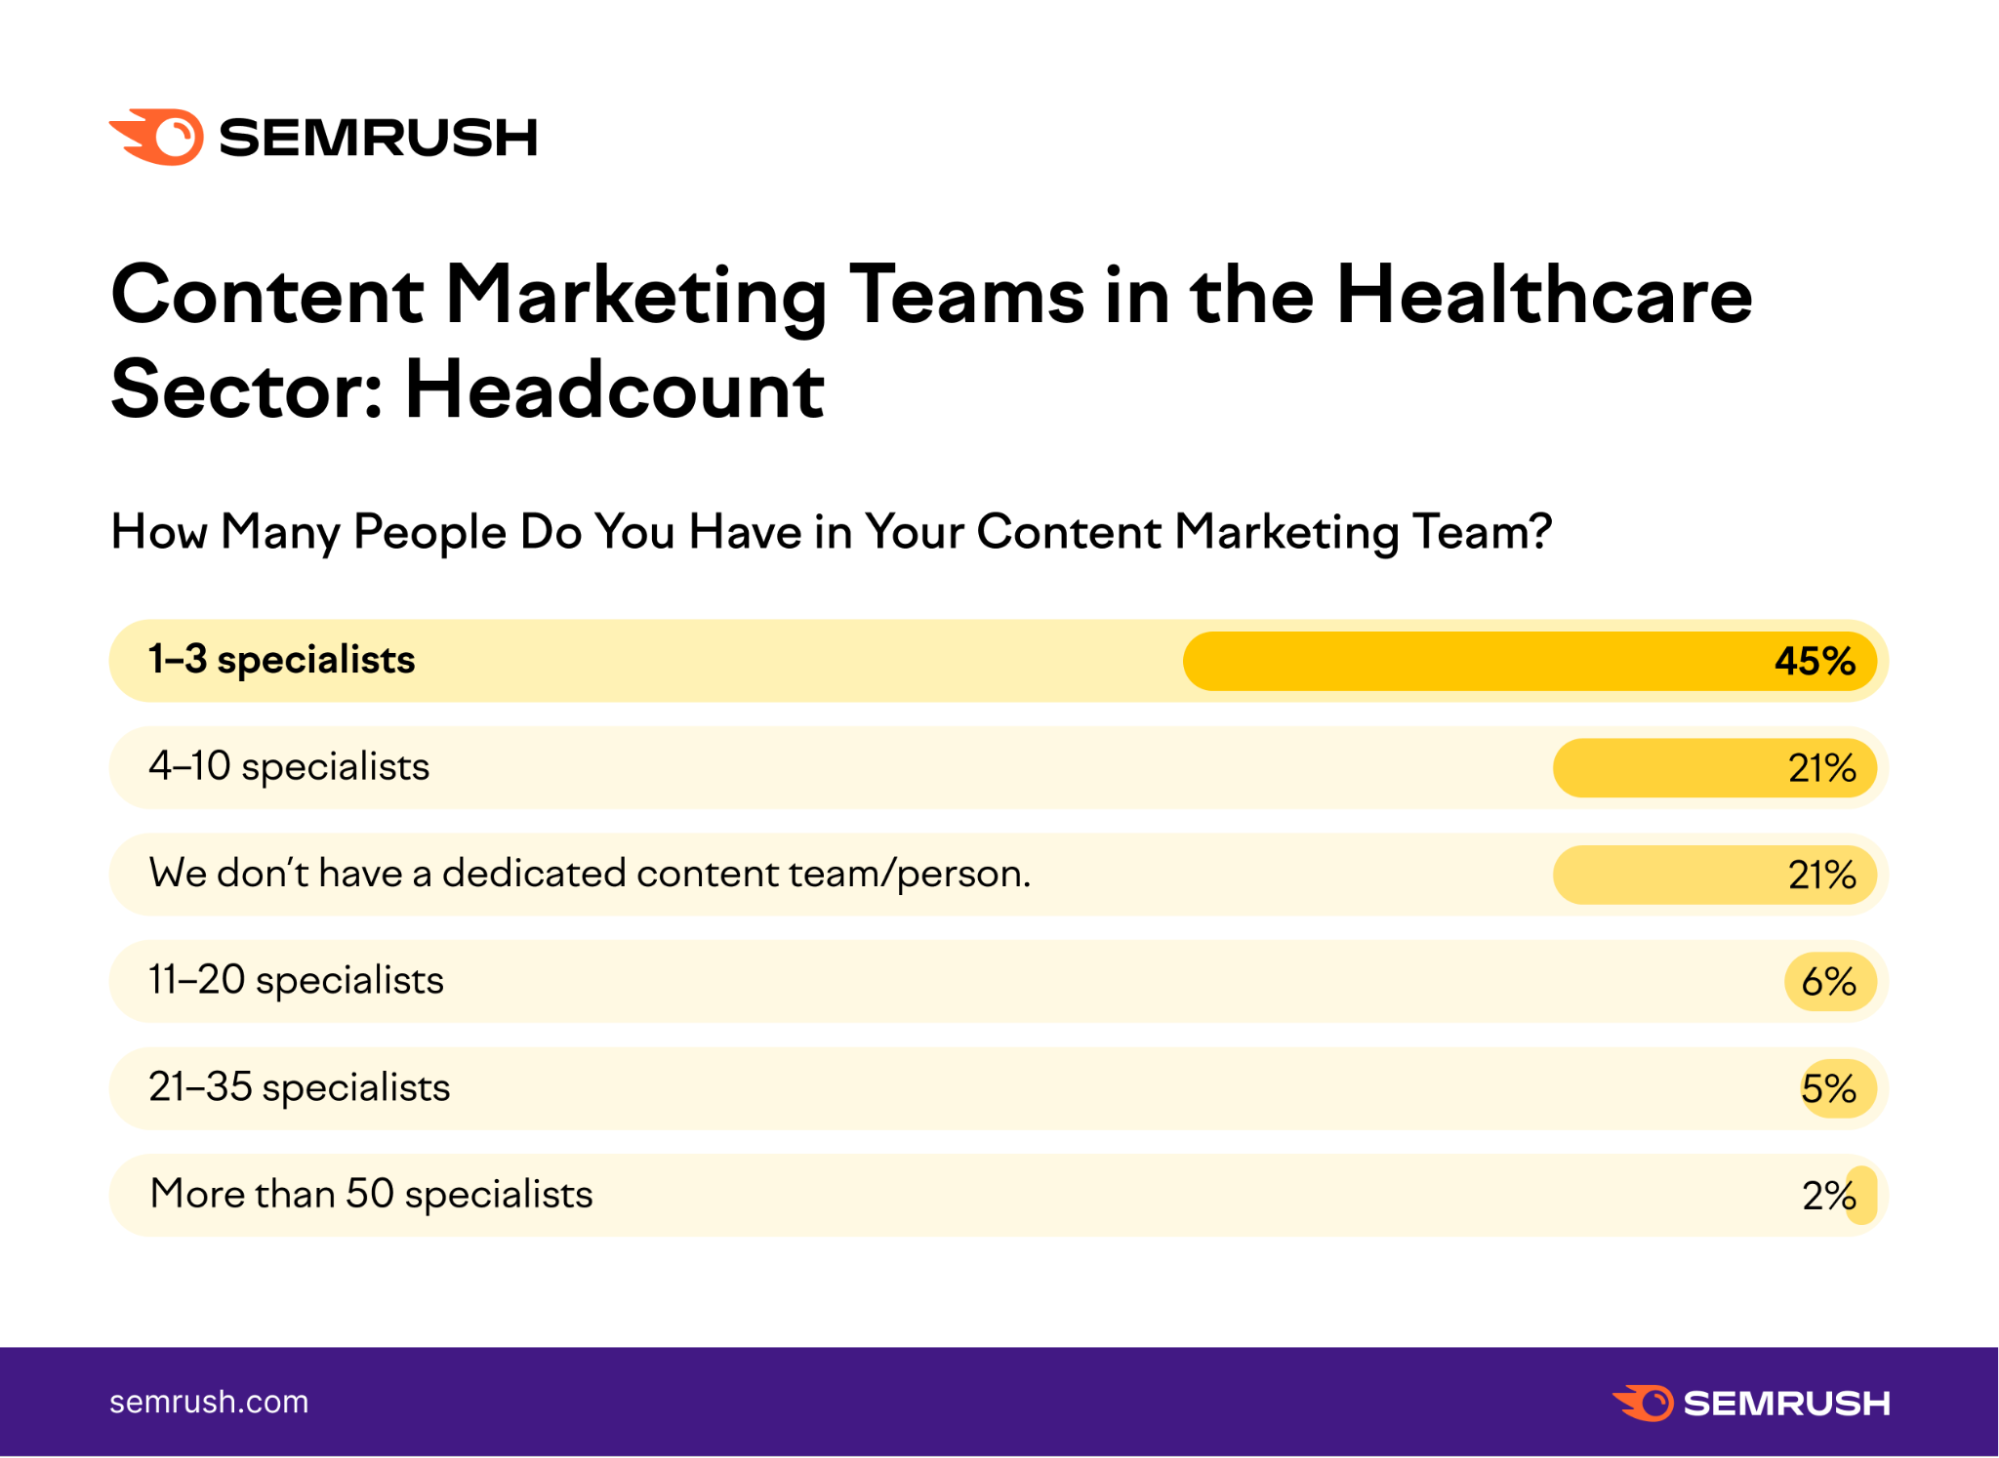 Healthcare content teams